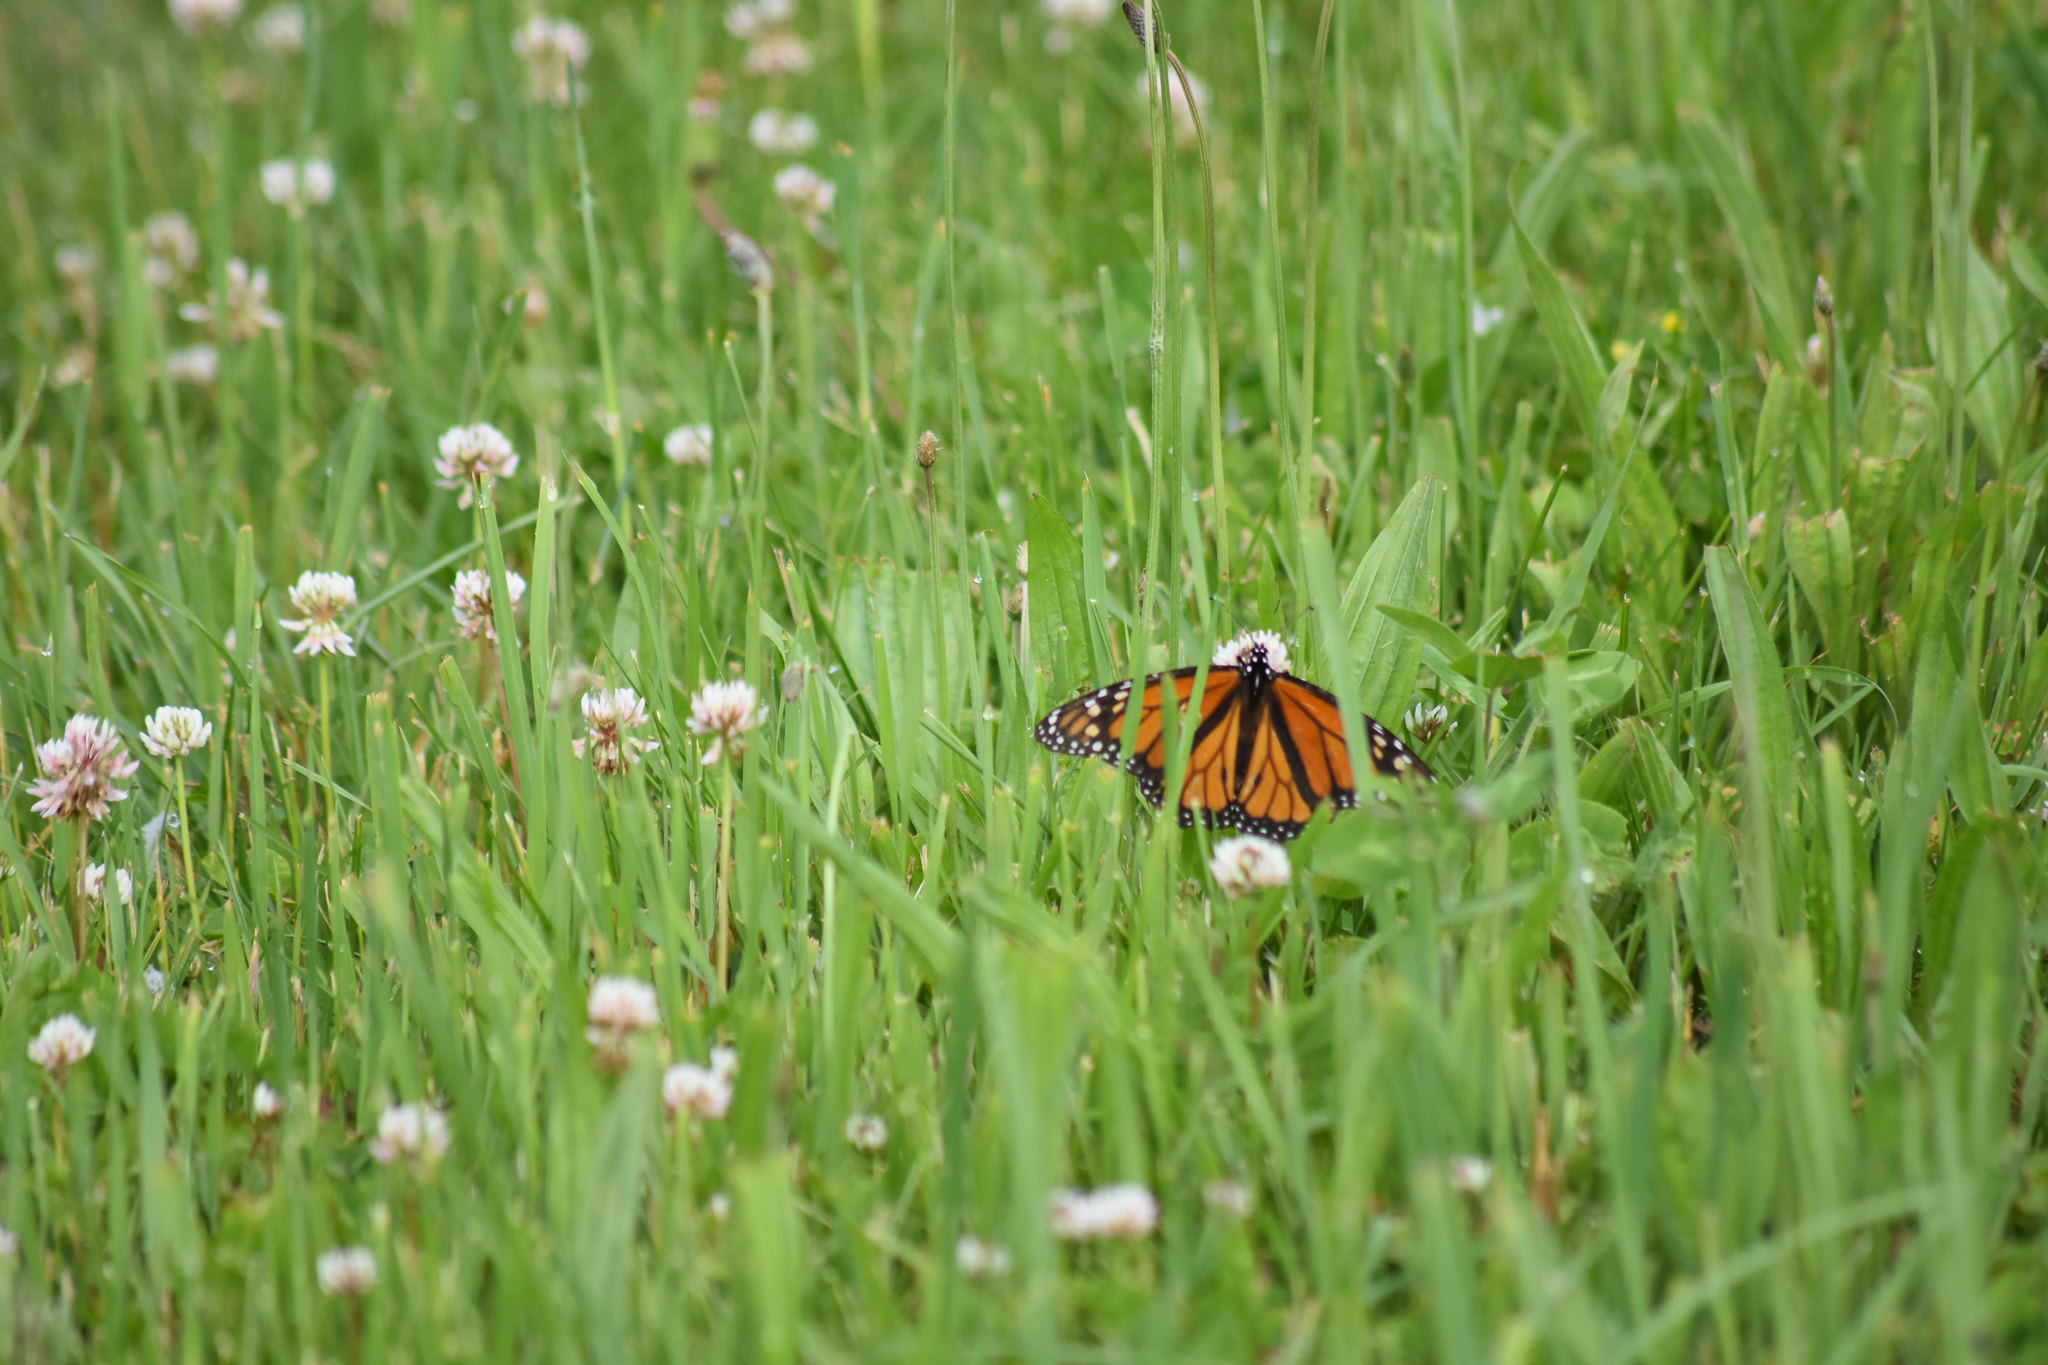 Monarch butterfly on wild flower